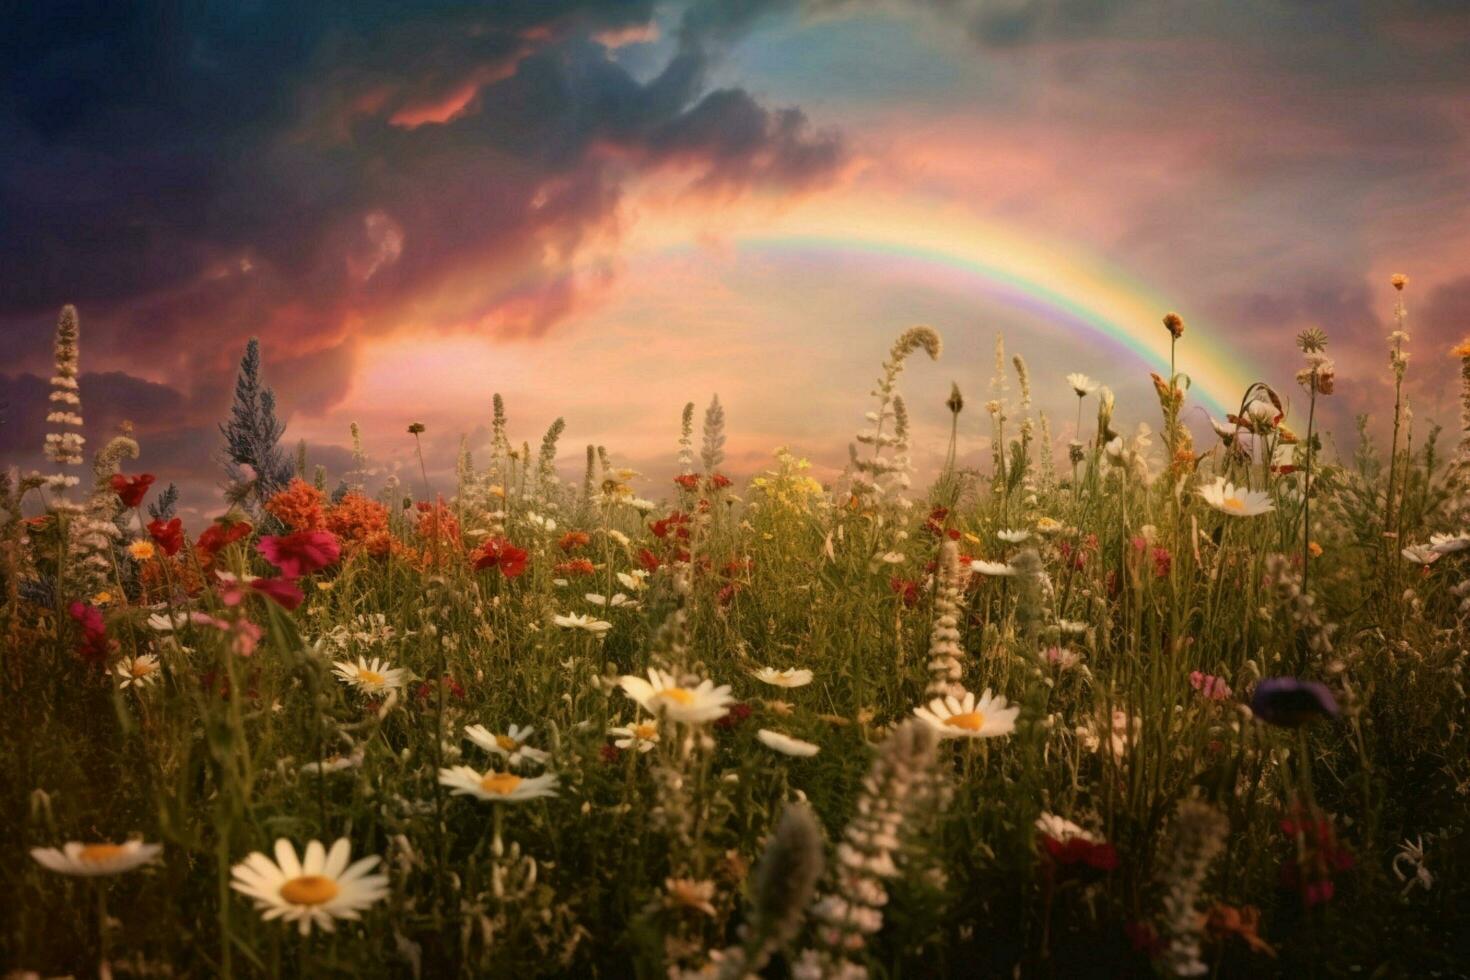 een veld- van wilde bloemen met een regenboog in de lucht foto